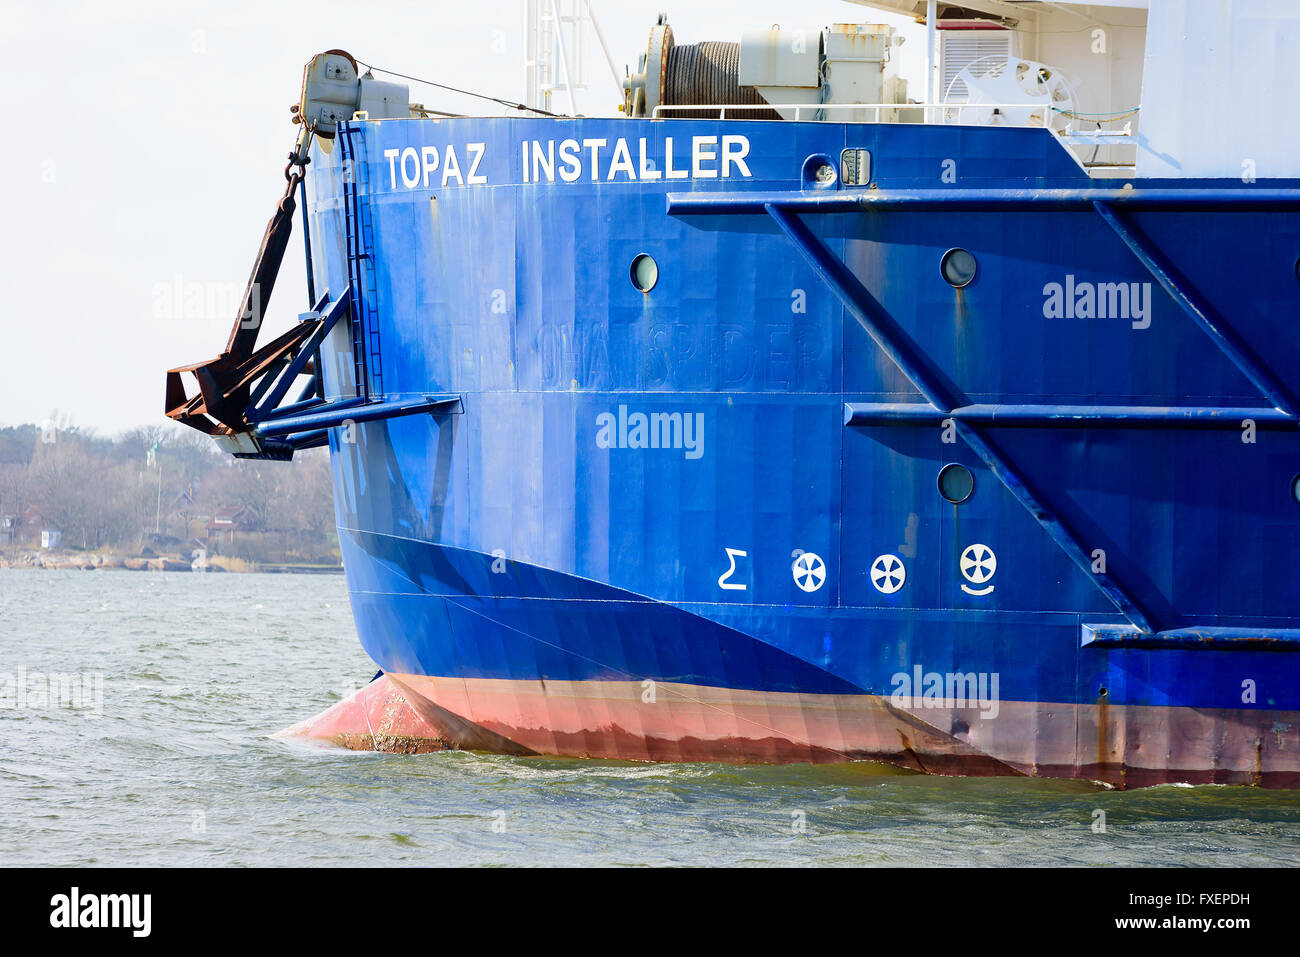 Karlskrona, Svezia - 7 Aprile 2016: la prua del cavo industriale nave da trasporto Topaz Installer. Foto Stock